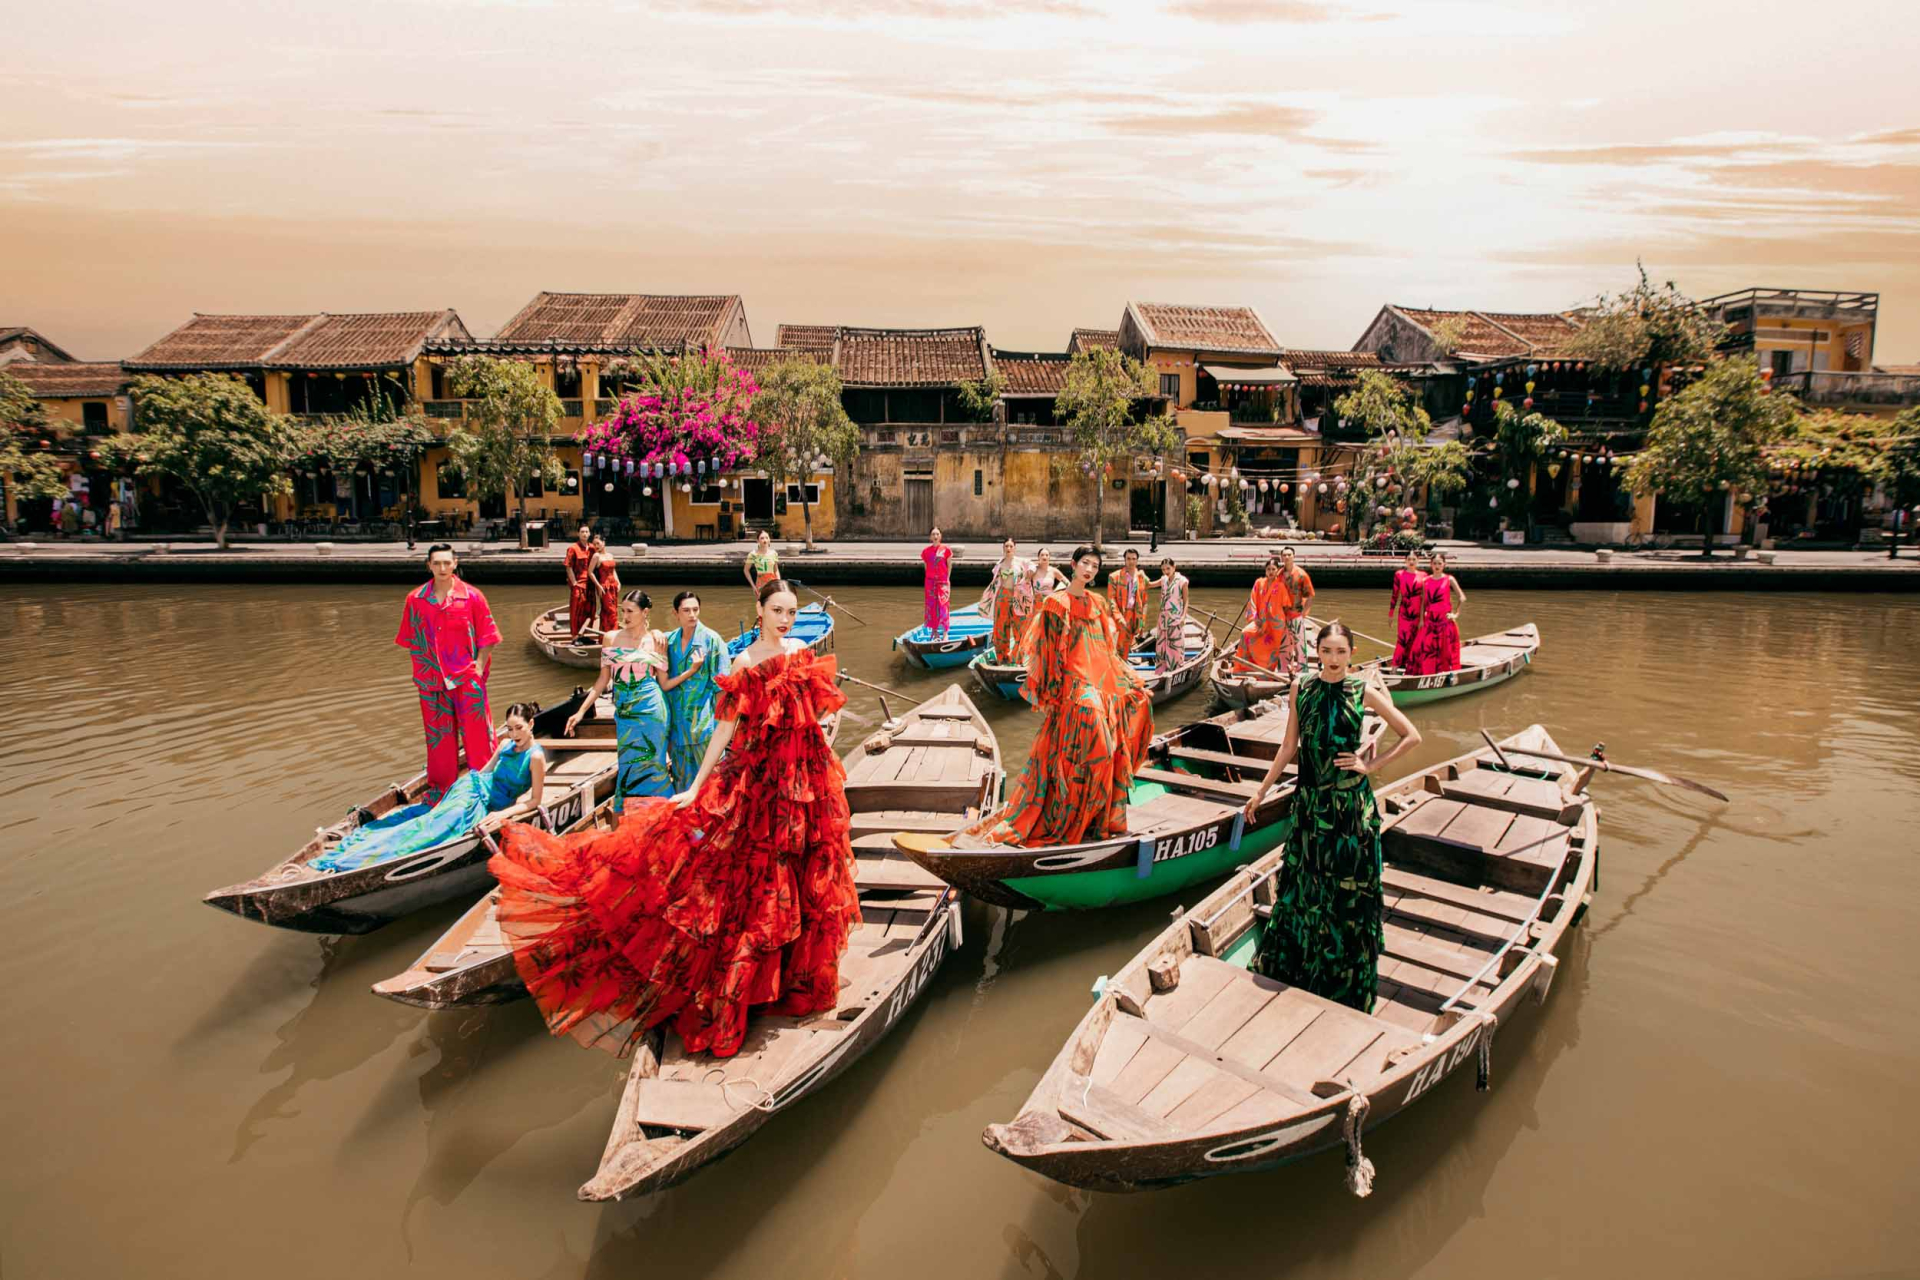 Show diễn quy tụ những cái tên người mẫu hàng đầu của làng thời trang Việt, cùng hơn 150 khách mời là những nghệ sỹ, celeb, doanh nhân.